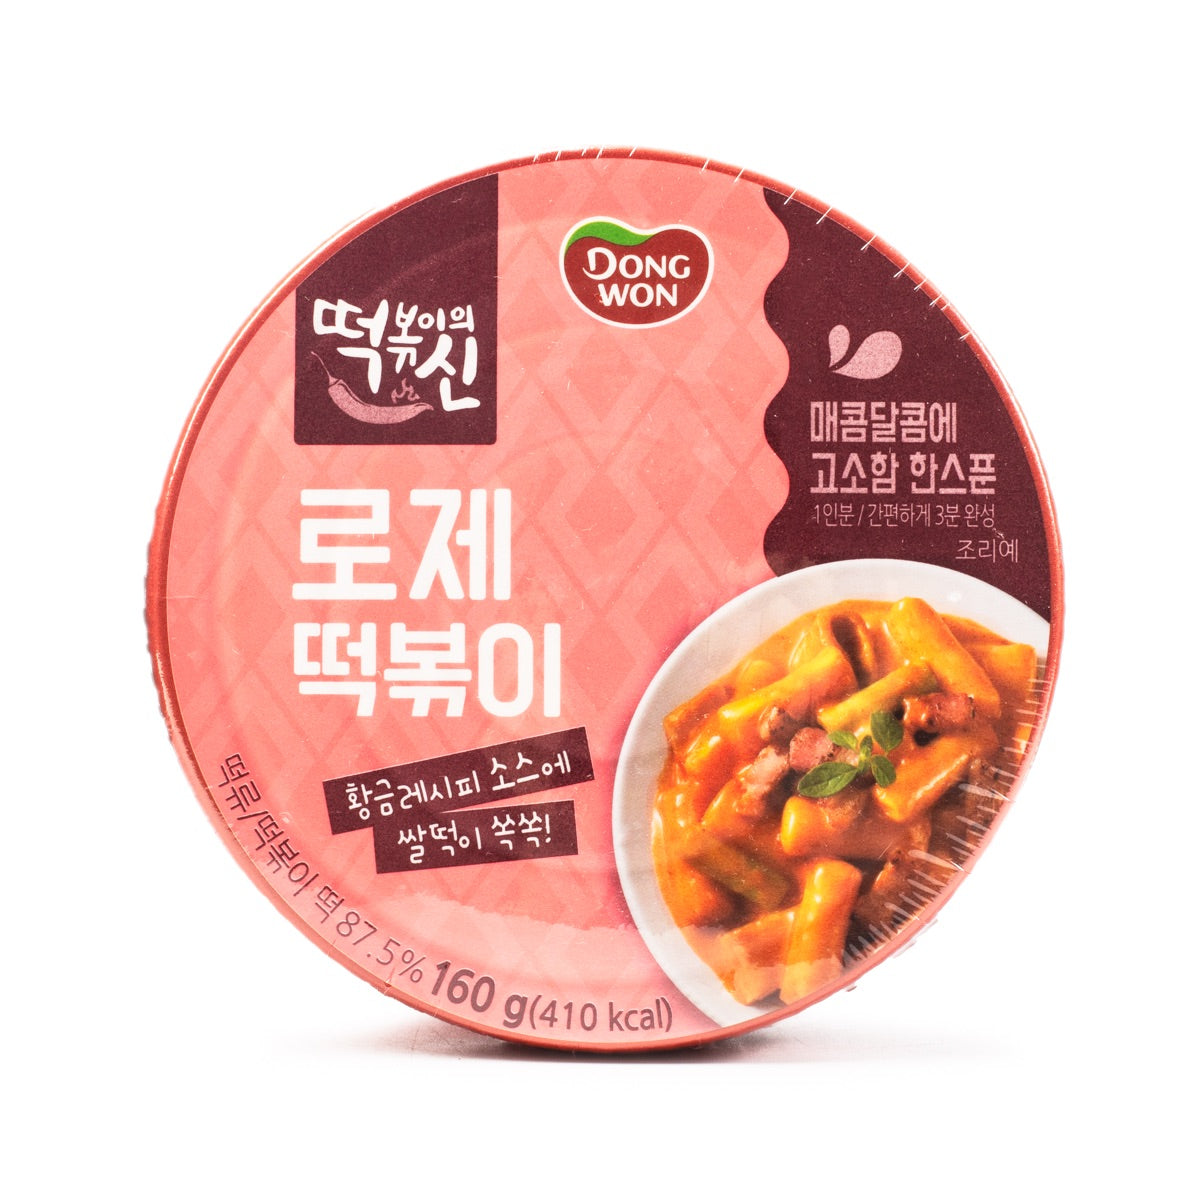 Dong Won - Topokki con taza de salsa rosa - 5.64 oz/160 g